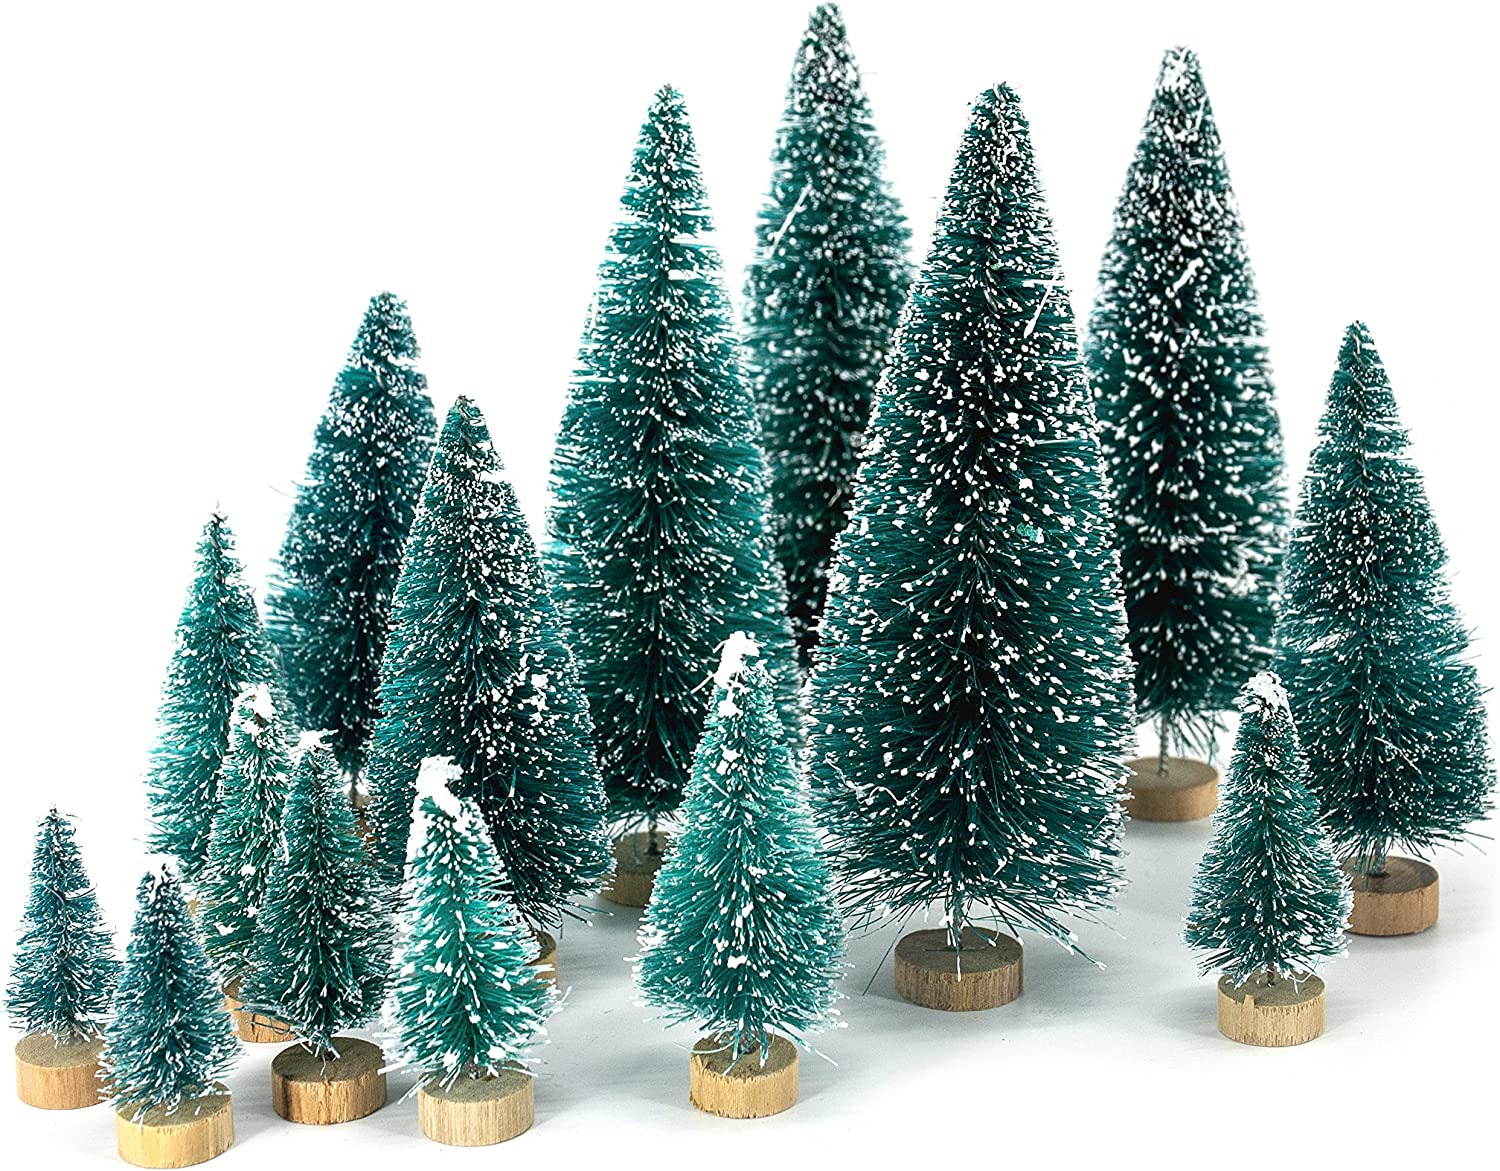 LOVEINUSA 40Pcs Mini Bottle Brush Trees in 5 Sizes for Christmas DIY Table Decor